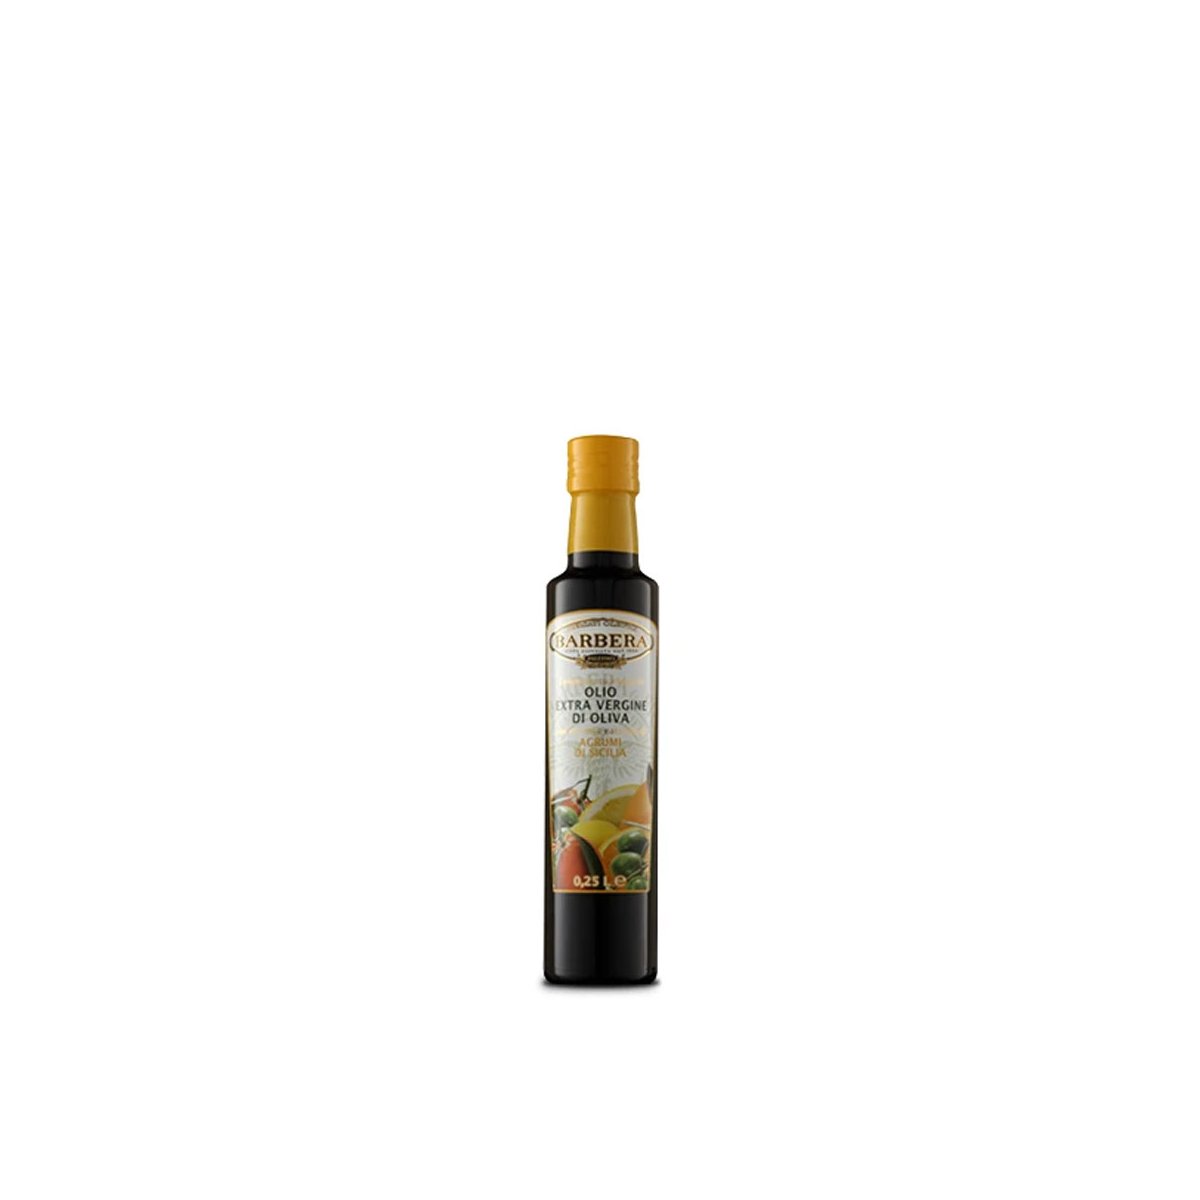 Olio Extravergine di Oliva aromatizzato agli agrumi, 0,25 L